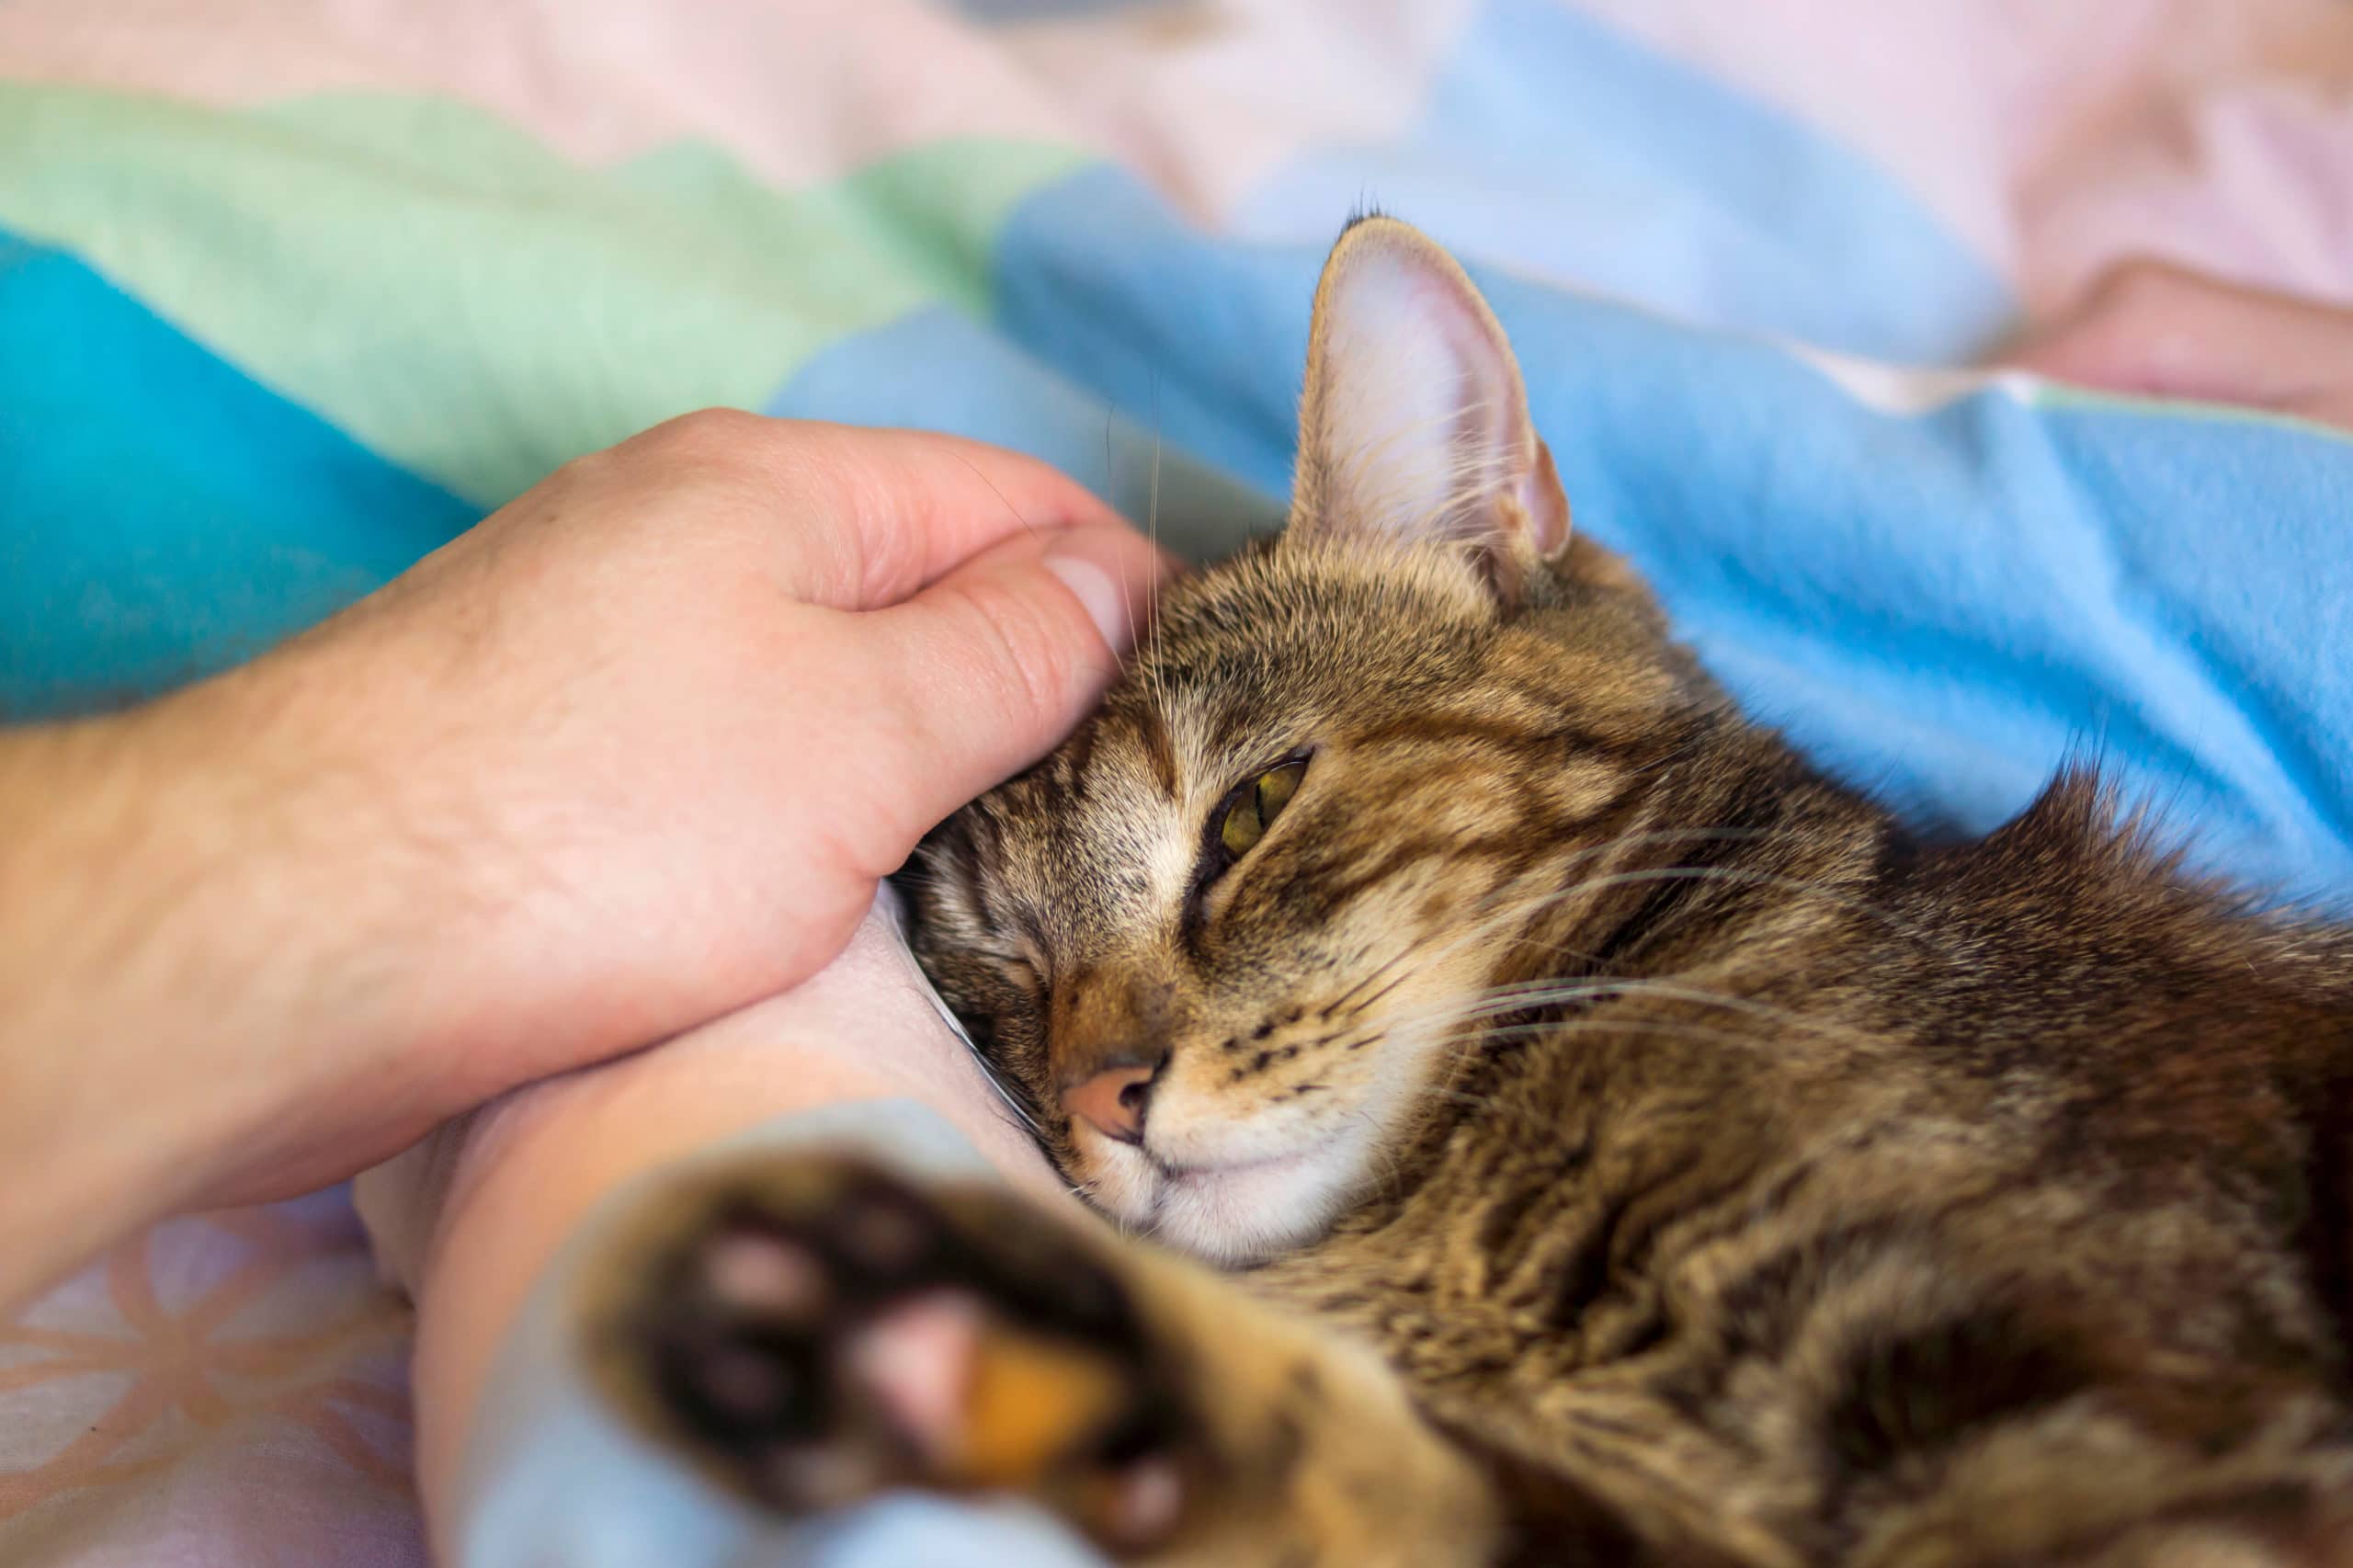 Un chat rayé orange et noir couché sur une couverture bleu et se fait caresser par une main d'homme blanc.